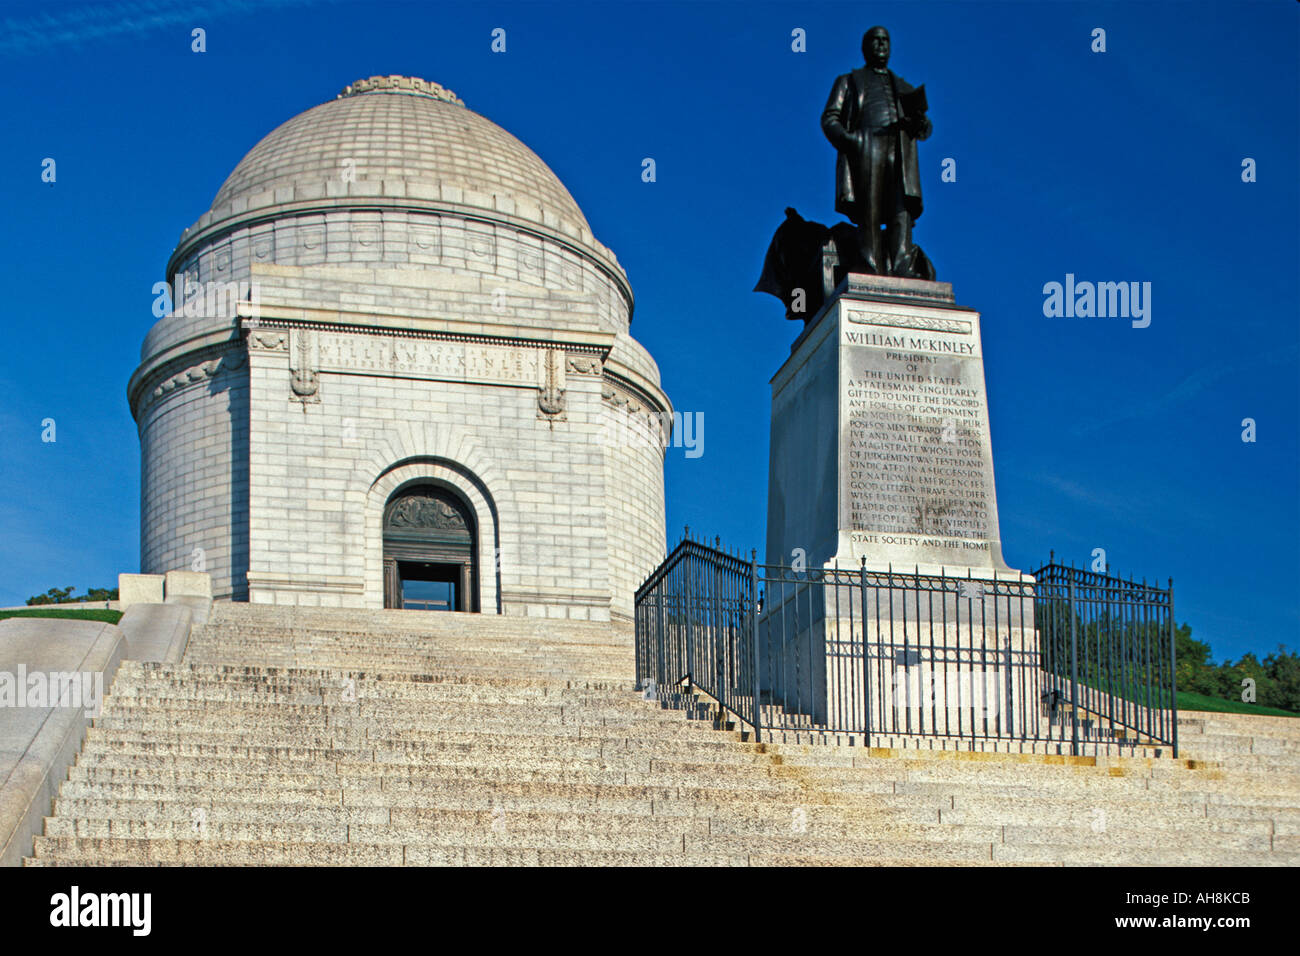 Presidential Memorial of William McKinley in Cleveland Ohio Stock Photo